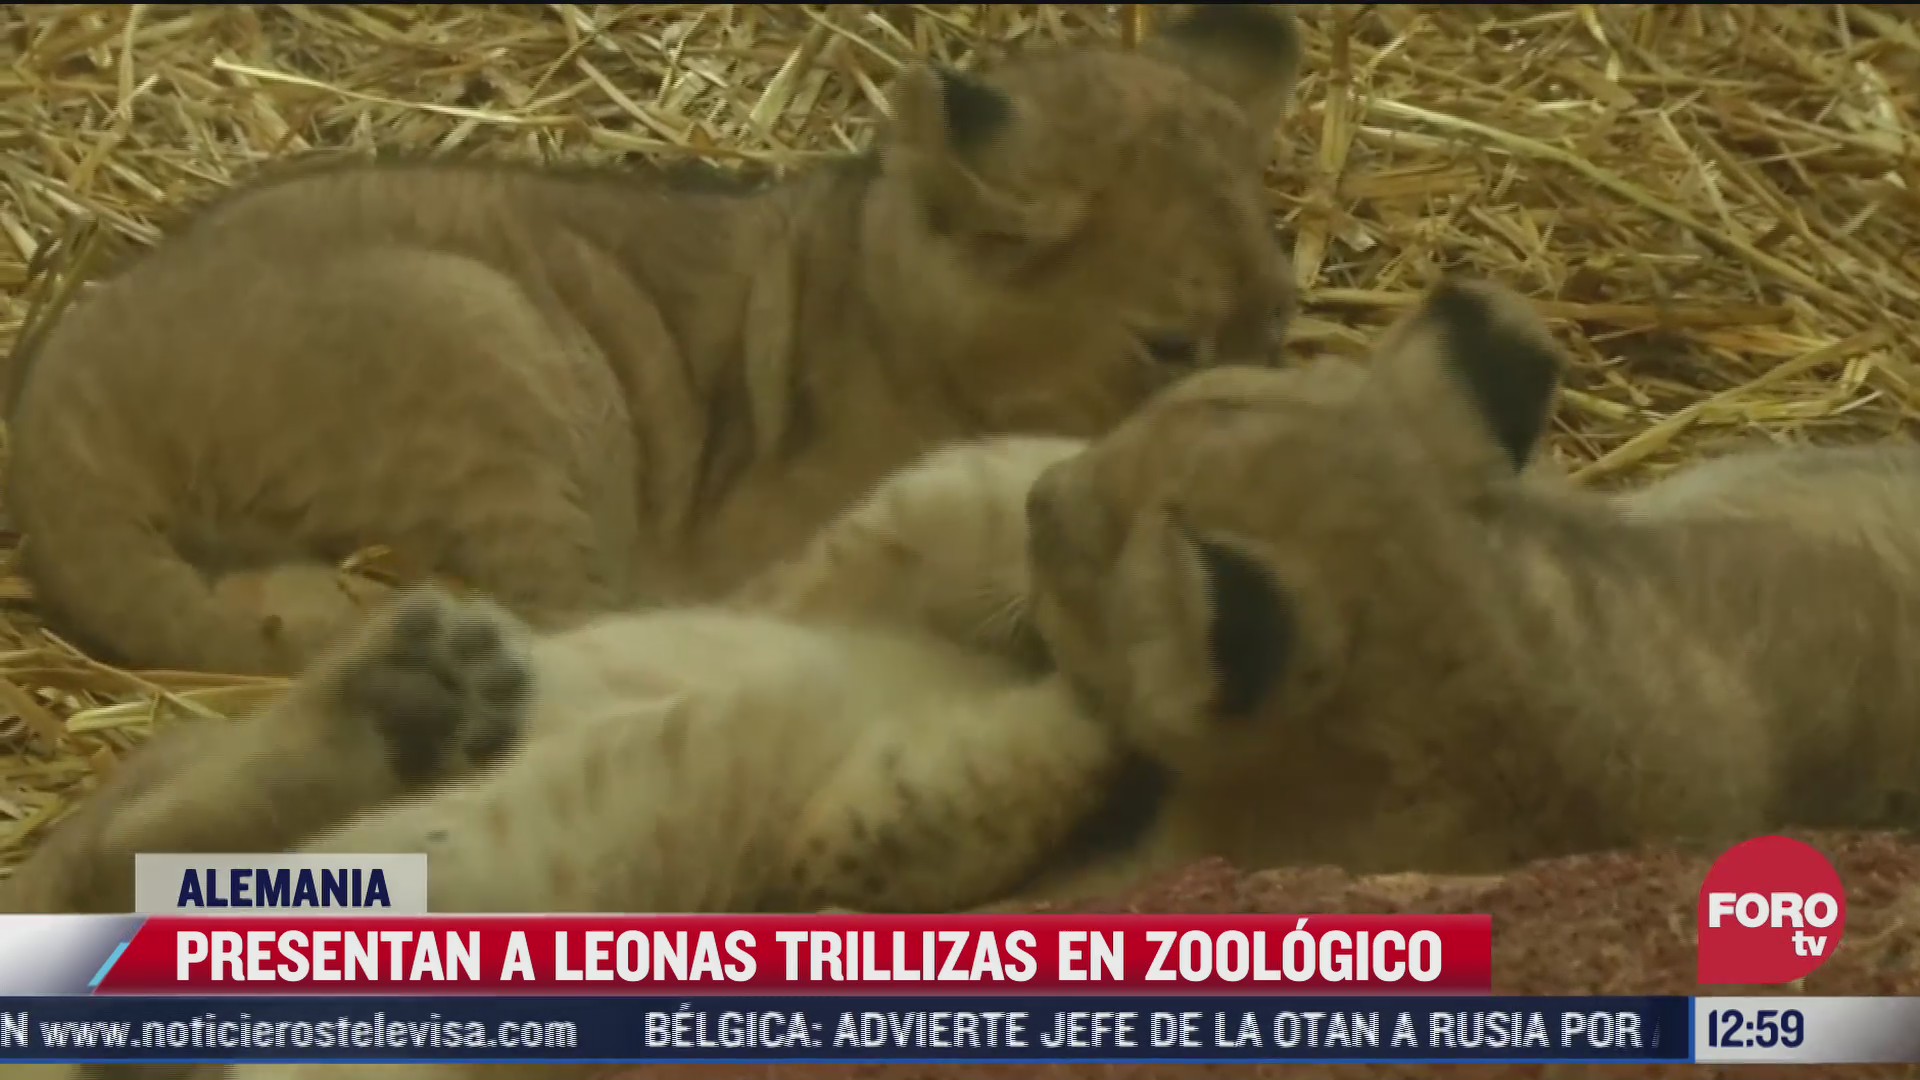 nacen leonas trillizas en zoologico de alemania